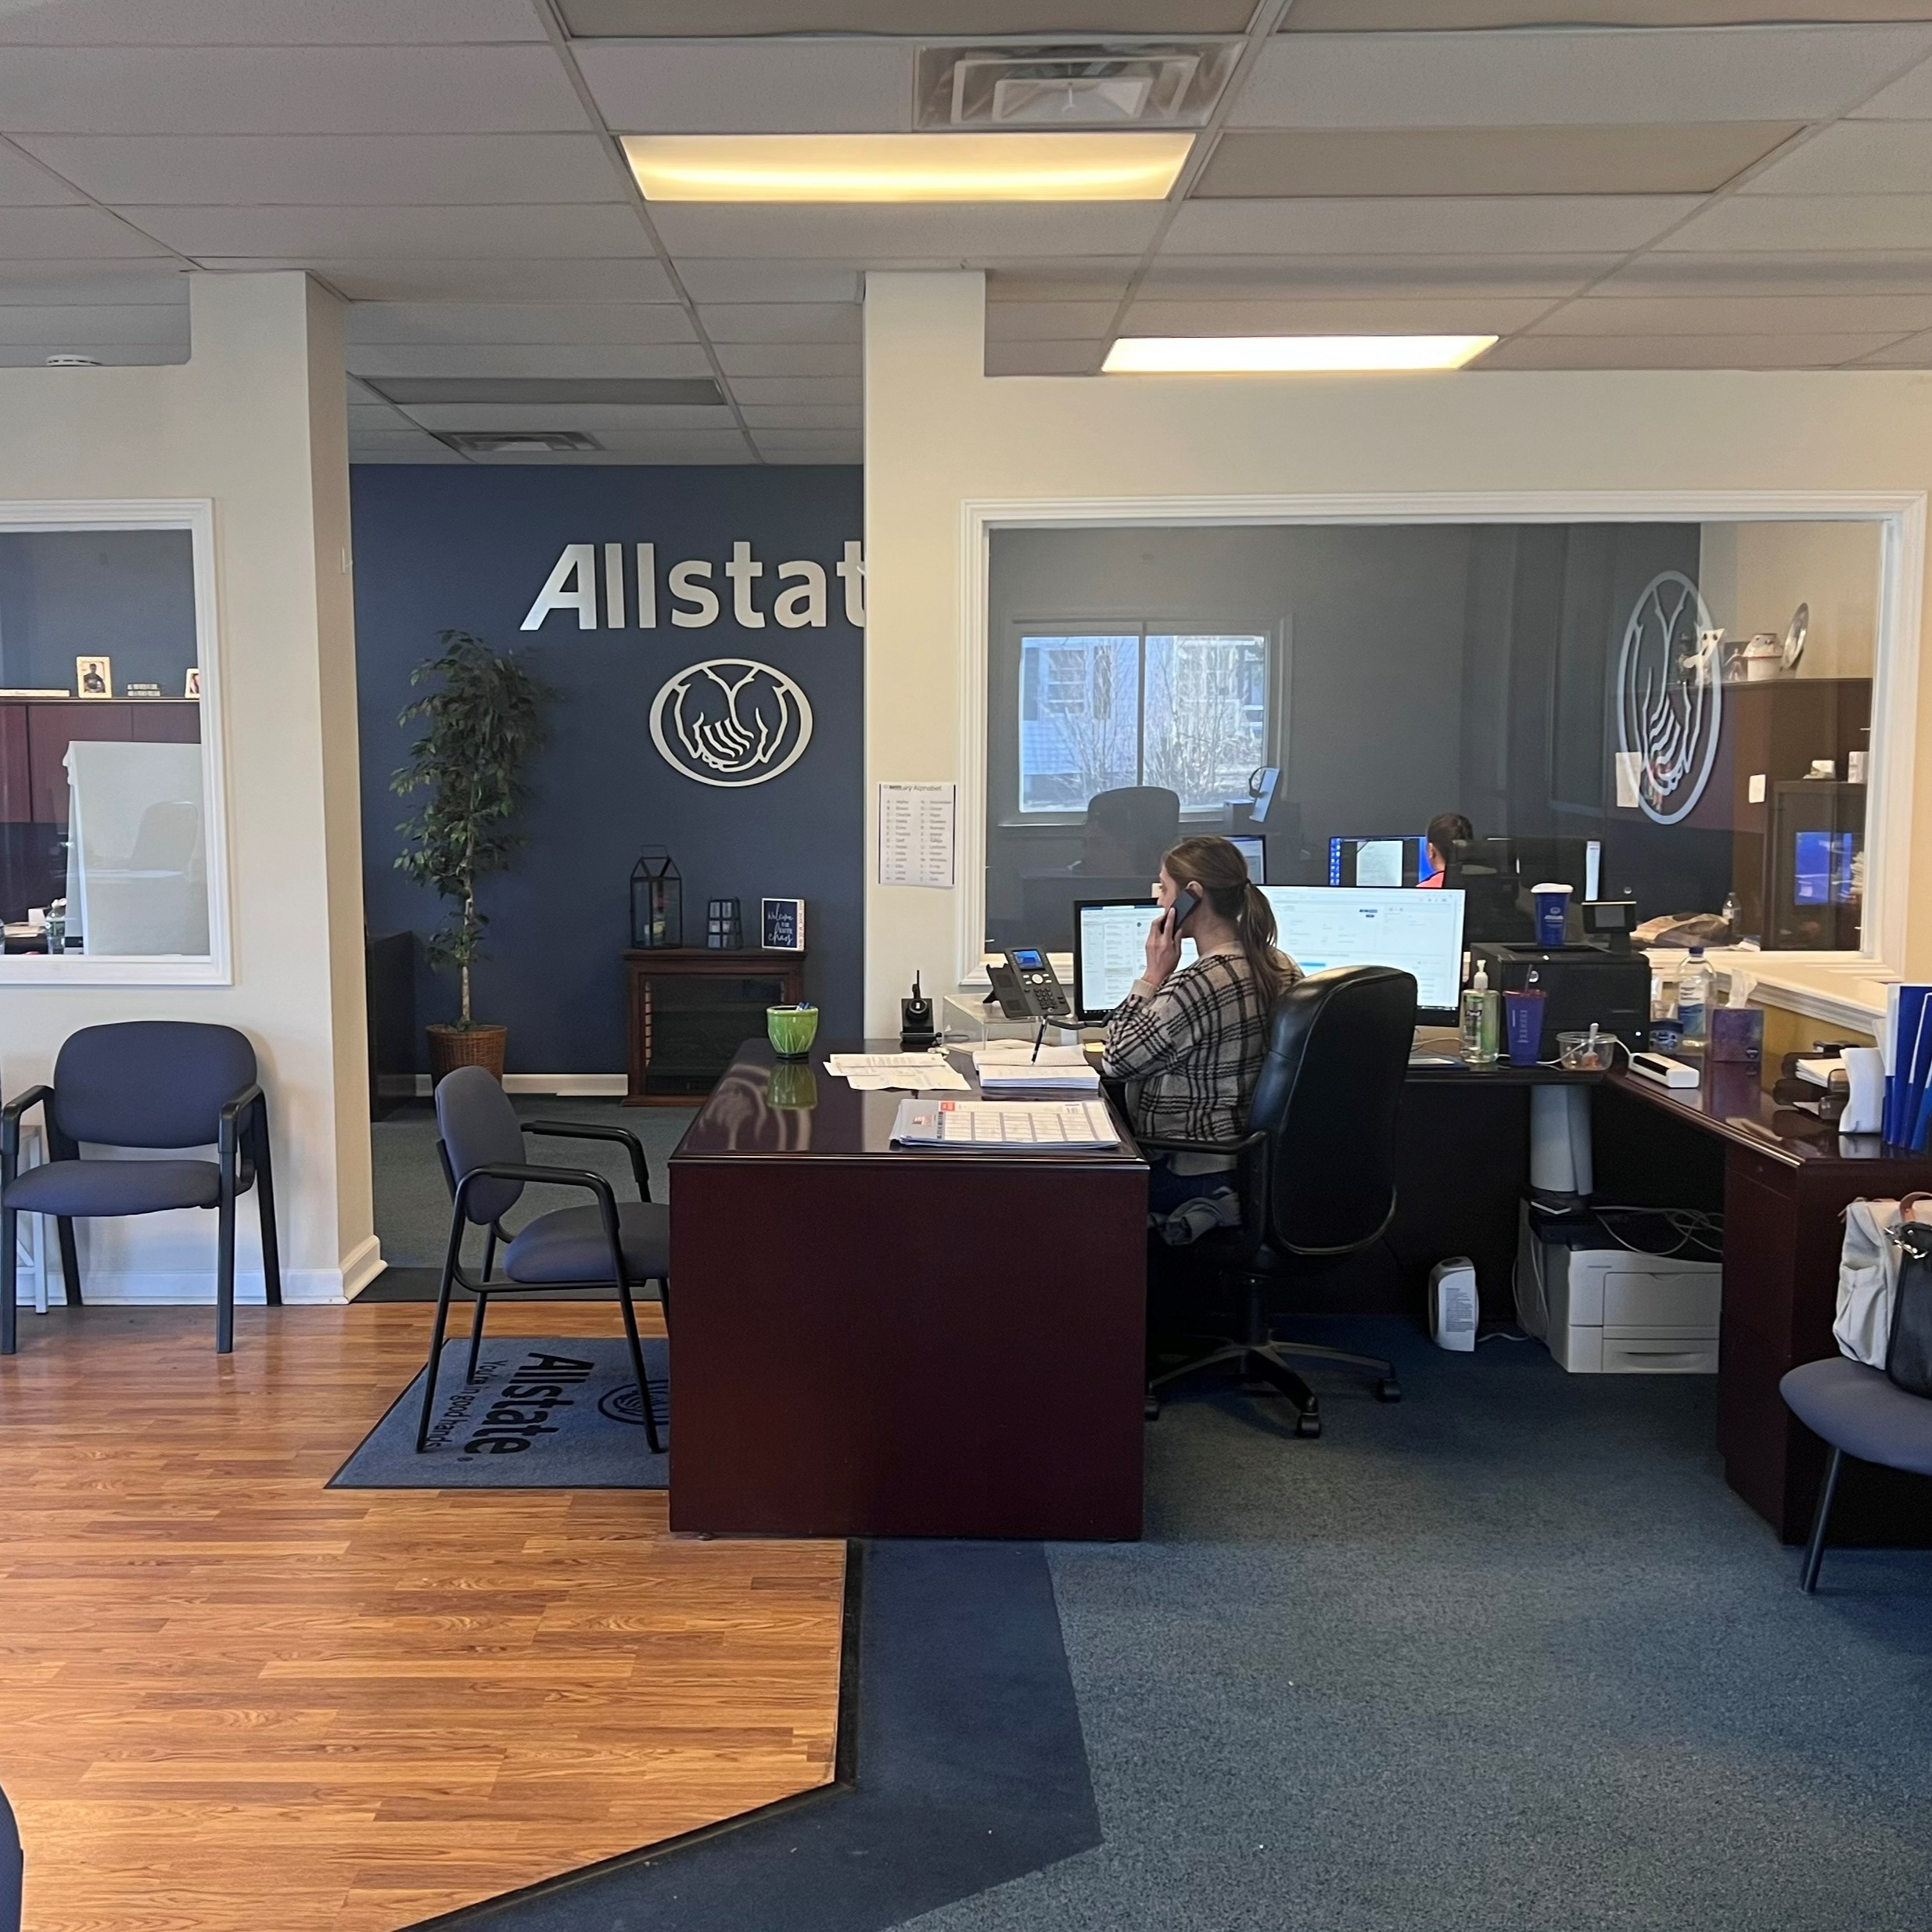 Allstate | Car Insurance in Rensselaer, NY - Coyne Insurance Agency